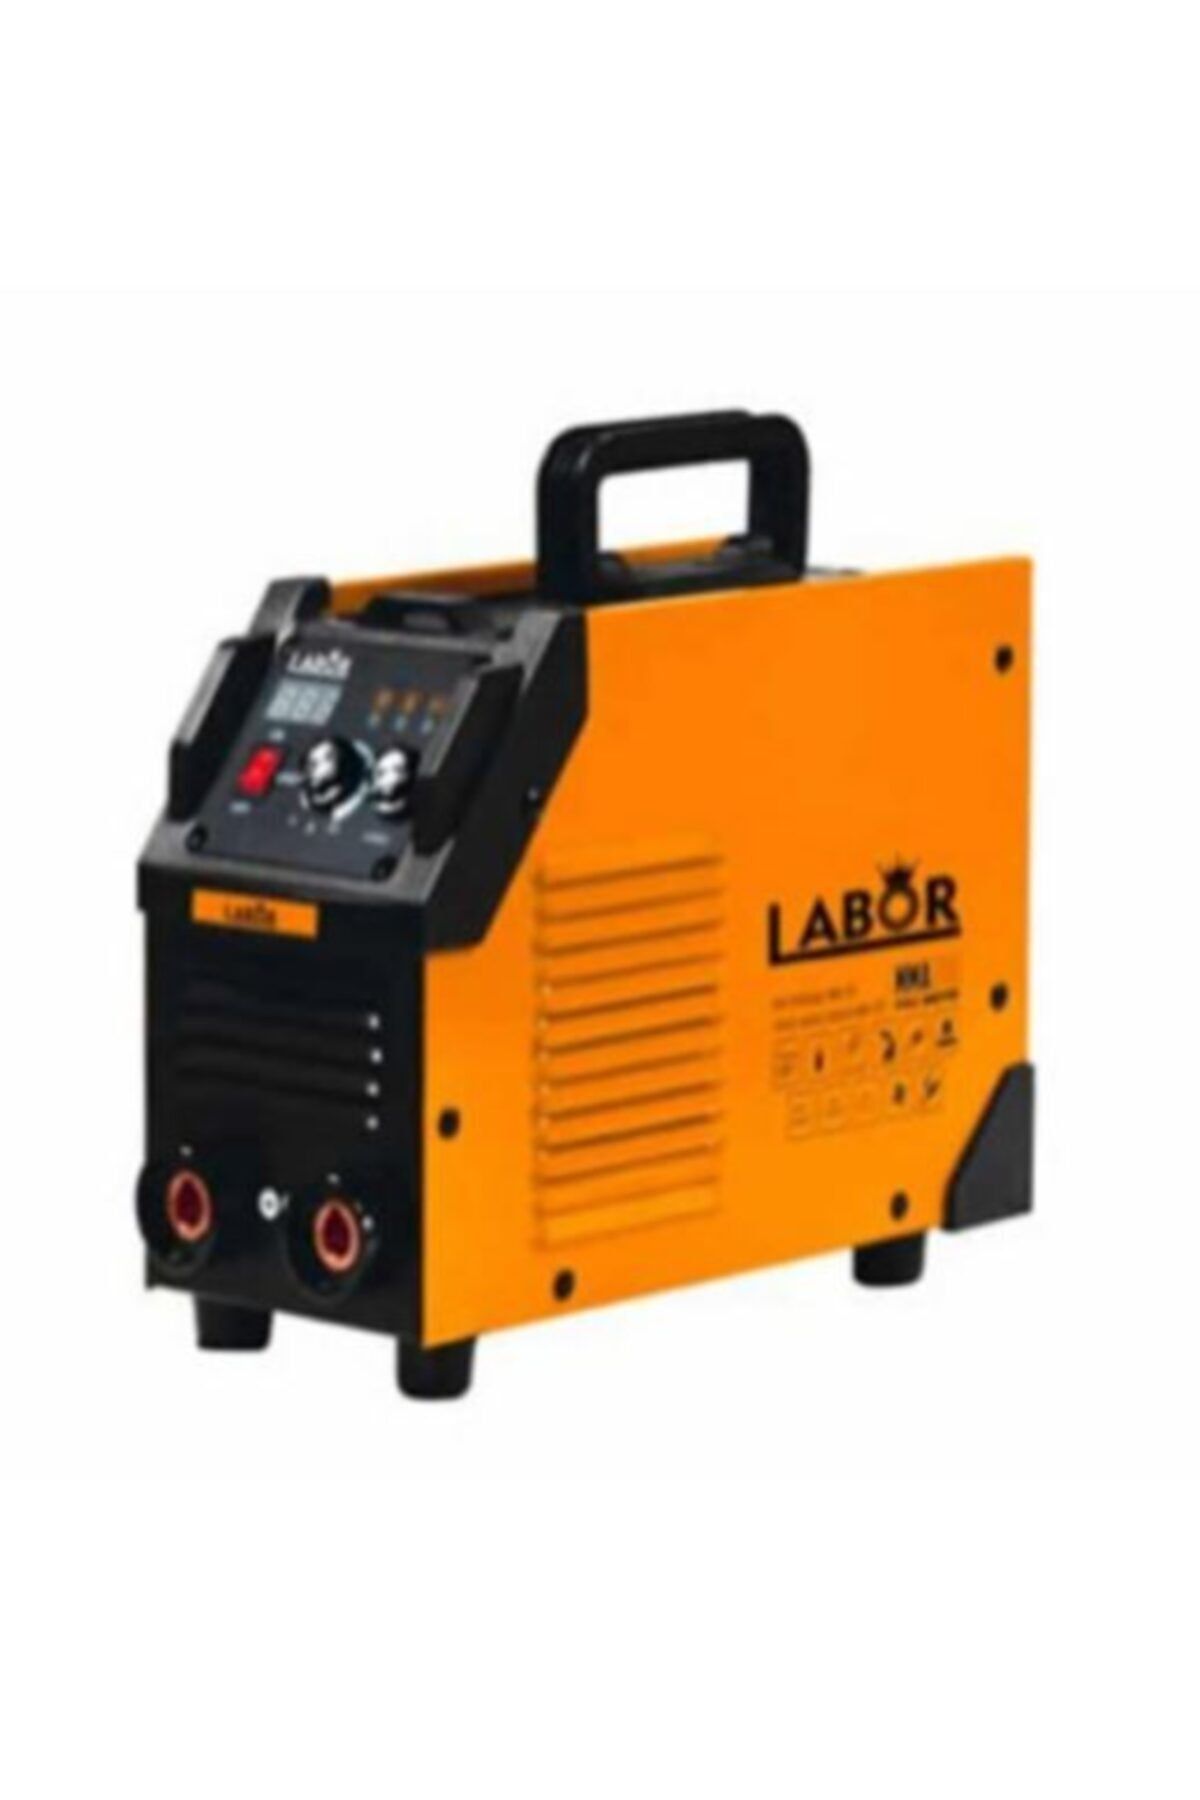 LABOR Invertör 160 Amper Kaynak Makinası